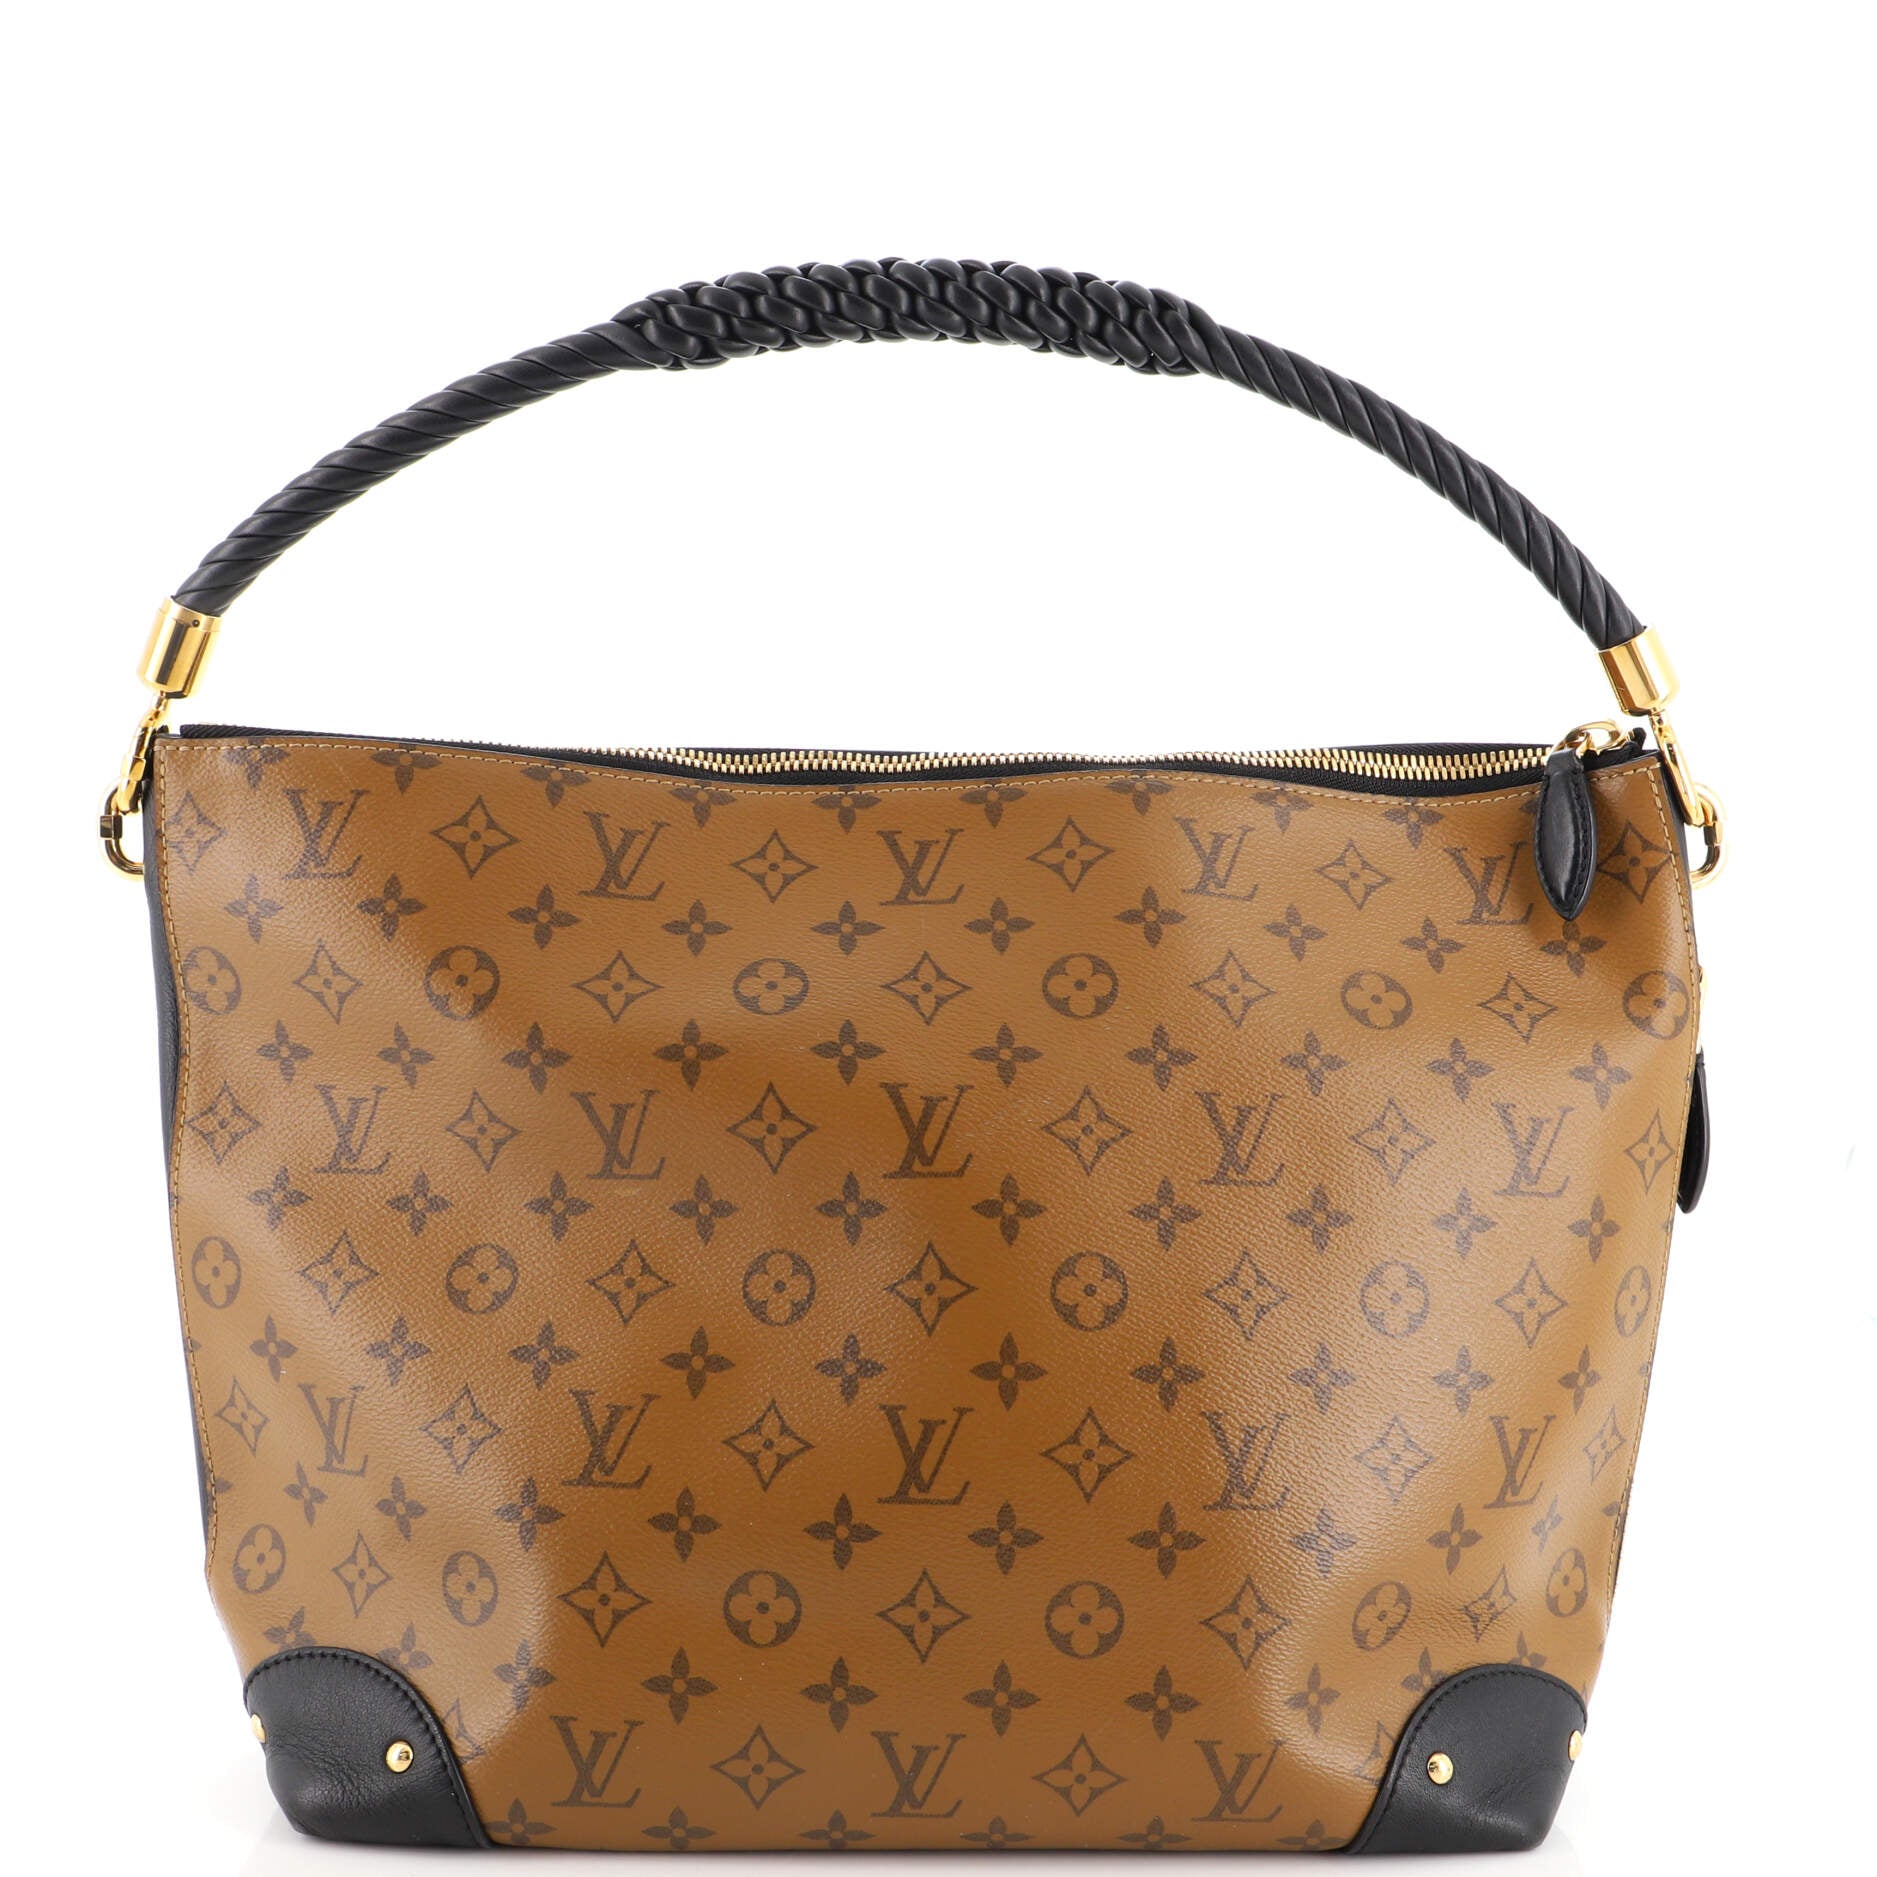 Louis Vuitton 2005 pre-owned Riviera Handbag - Farfetch